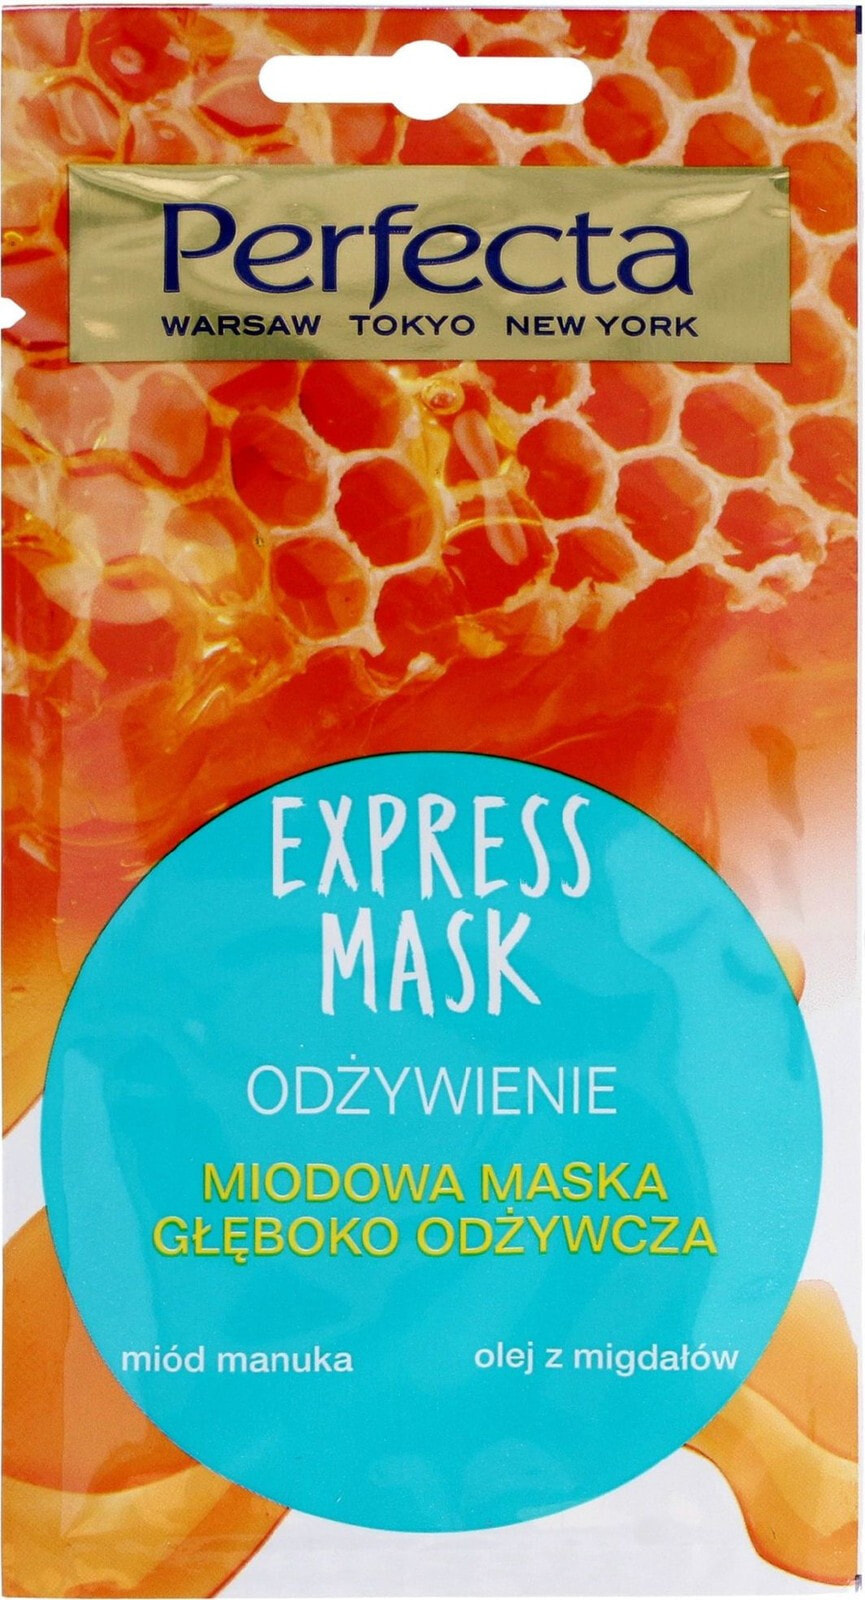 DAX Perfecta Express Mask Miodowa Maska głęboko odżywcza 8ml